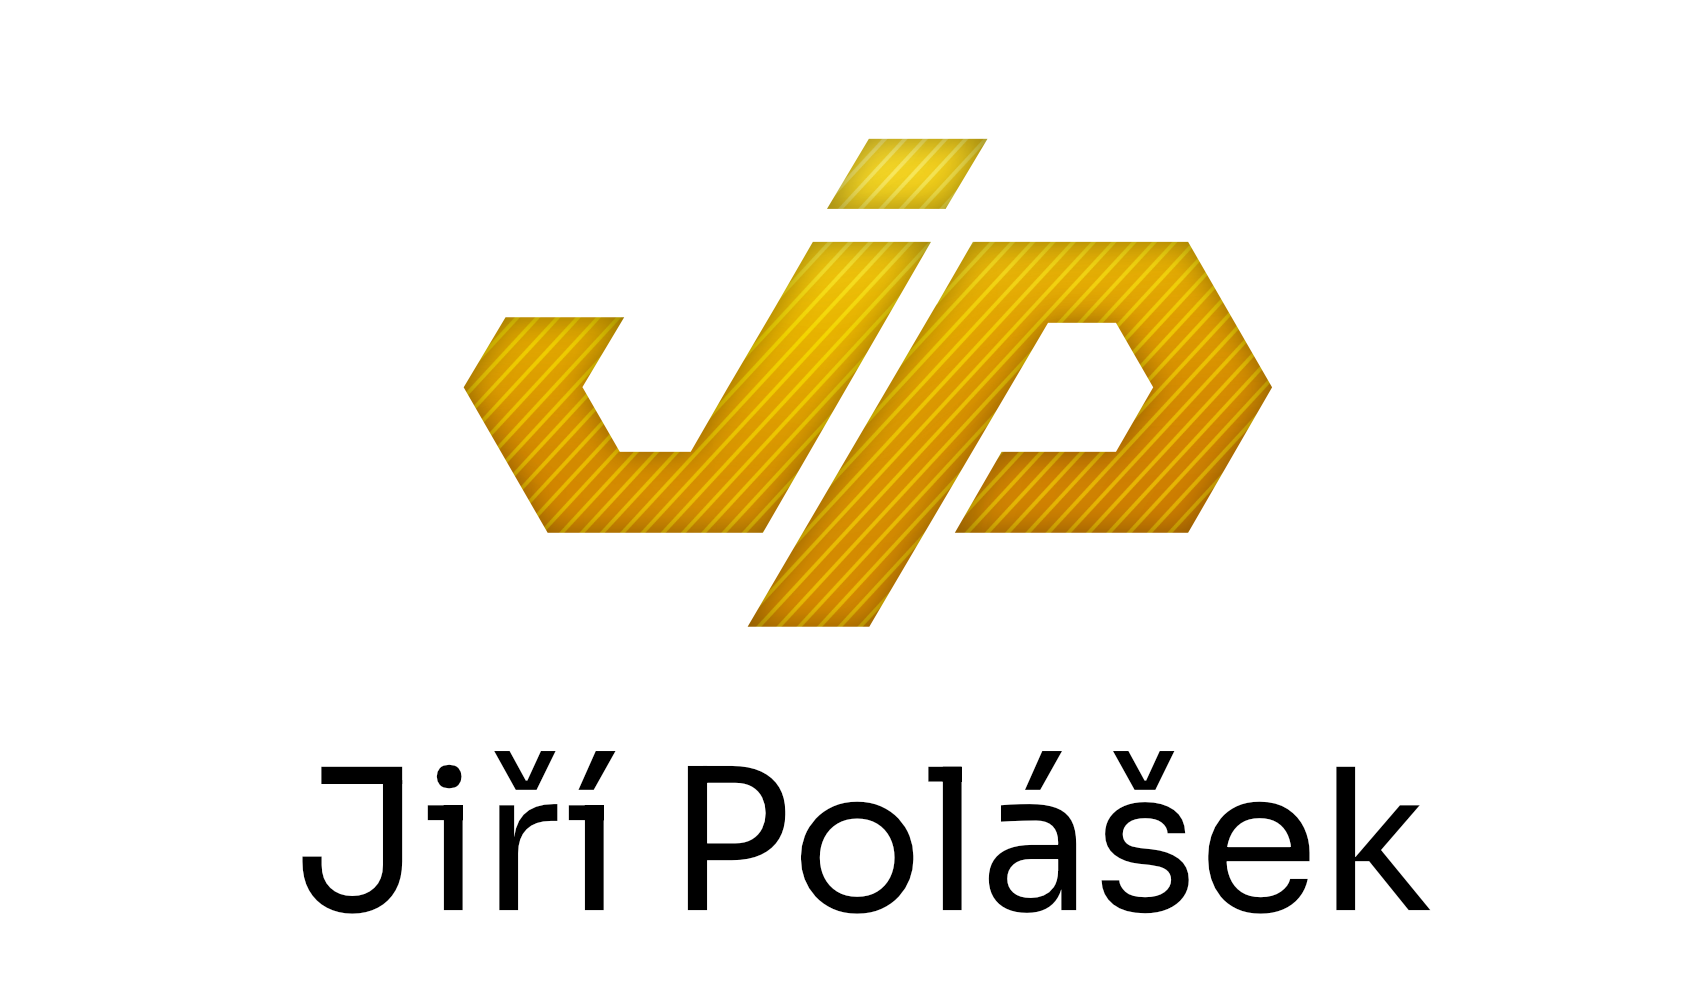 Jiří Polášek - experienced software architect and developer .NET/C#